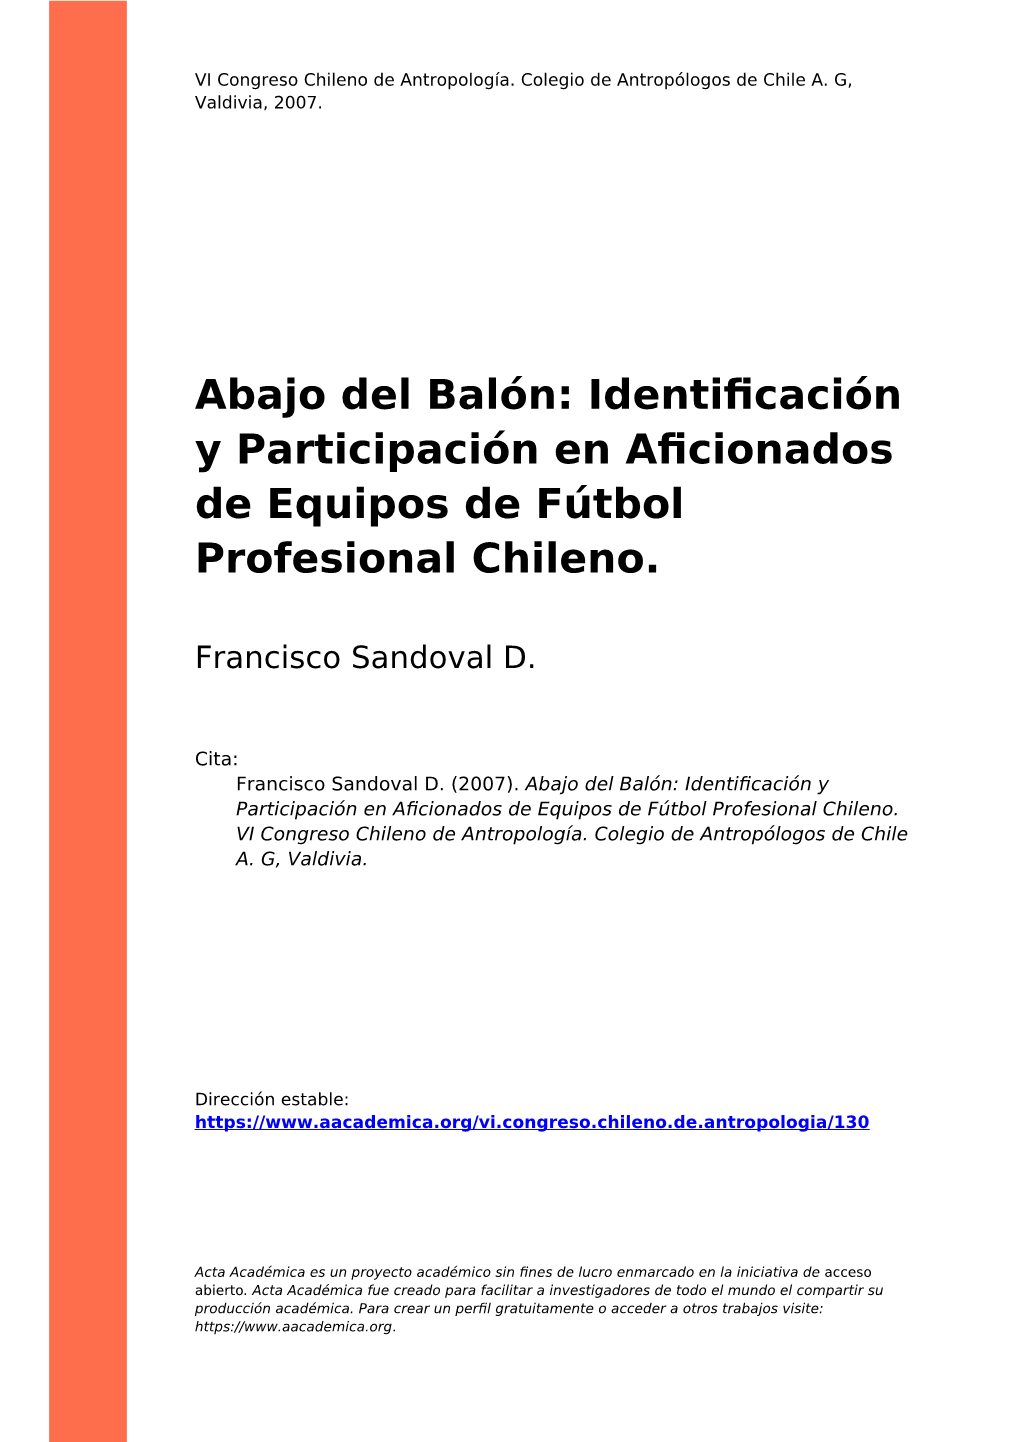 Abajo Del Balón: Identificación Y Participación En Aficionados De Equipos De Fútbol Profesional Chileno